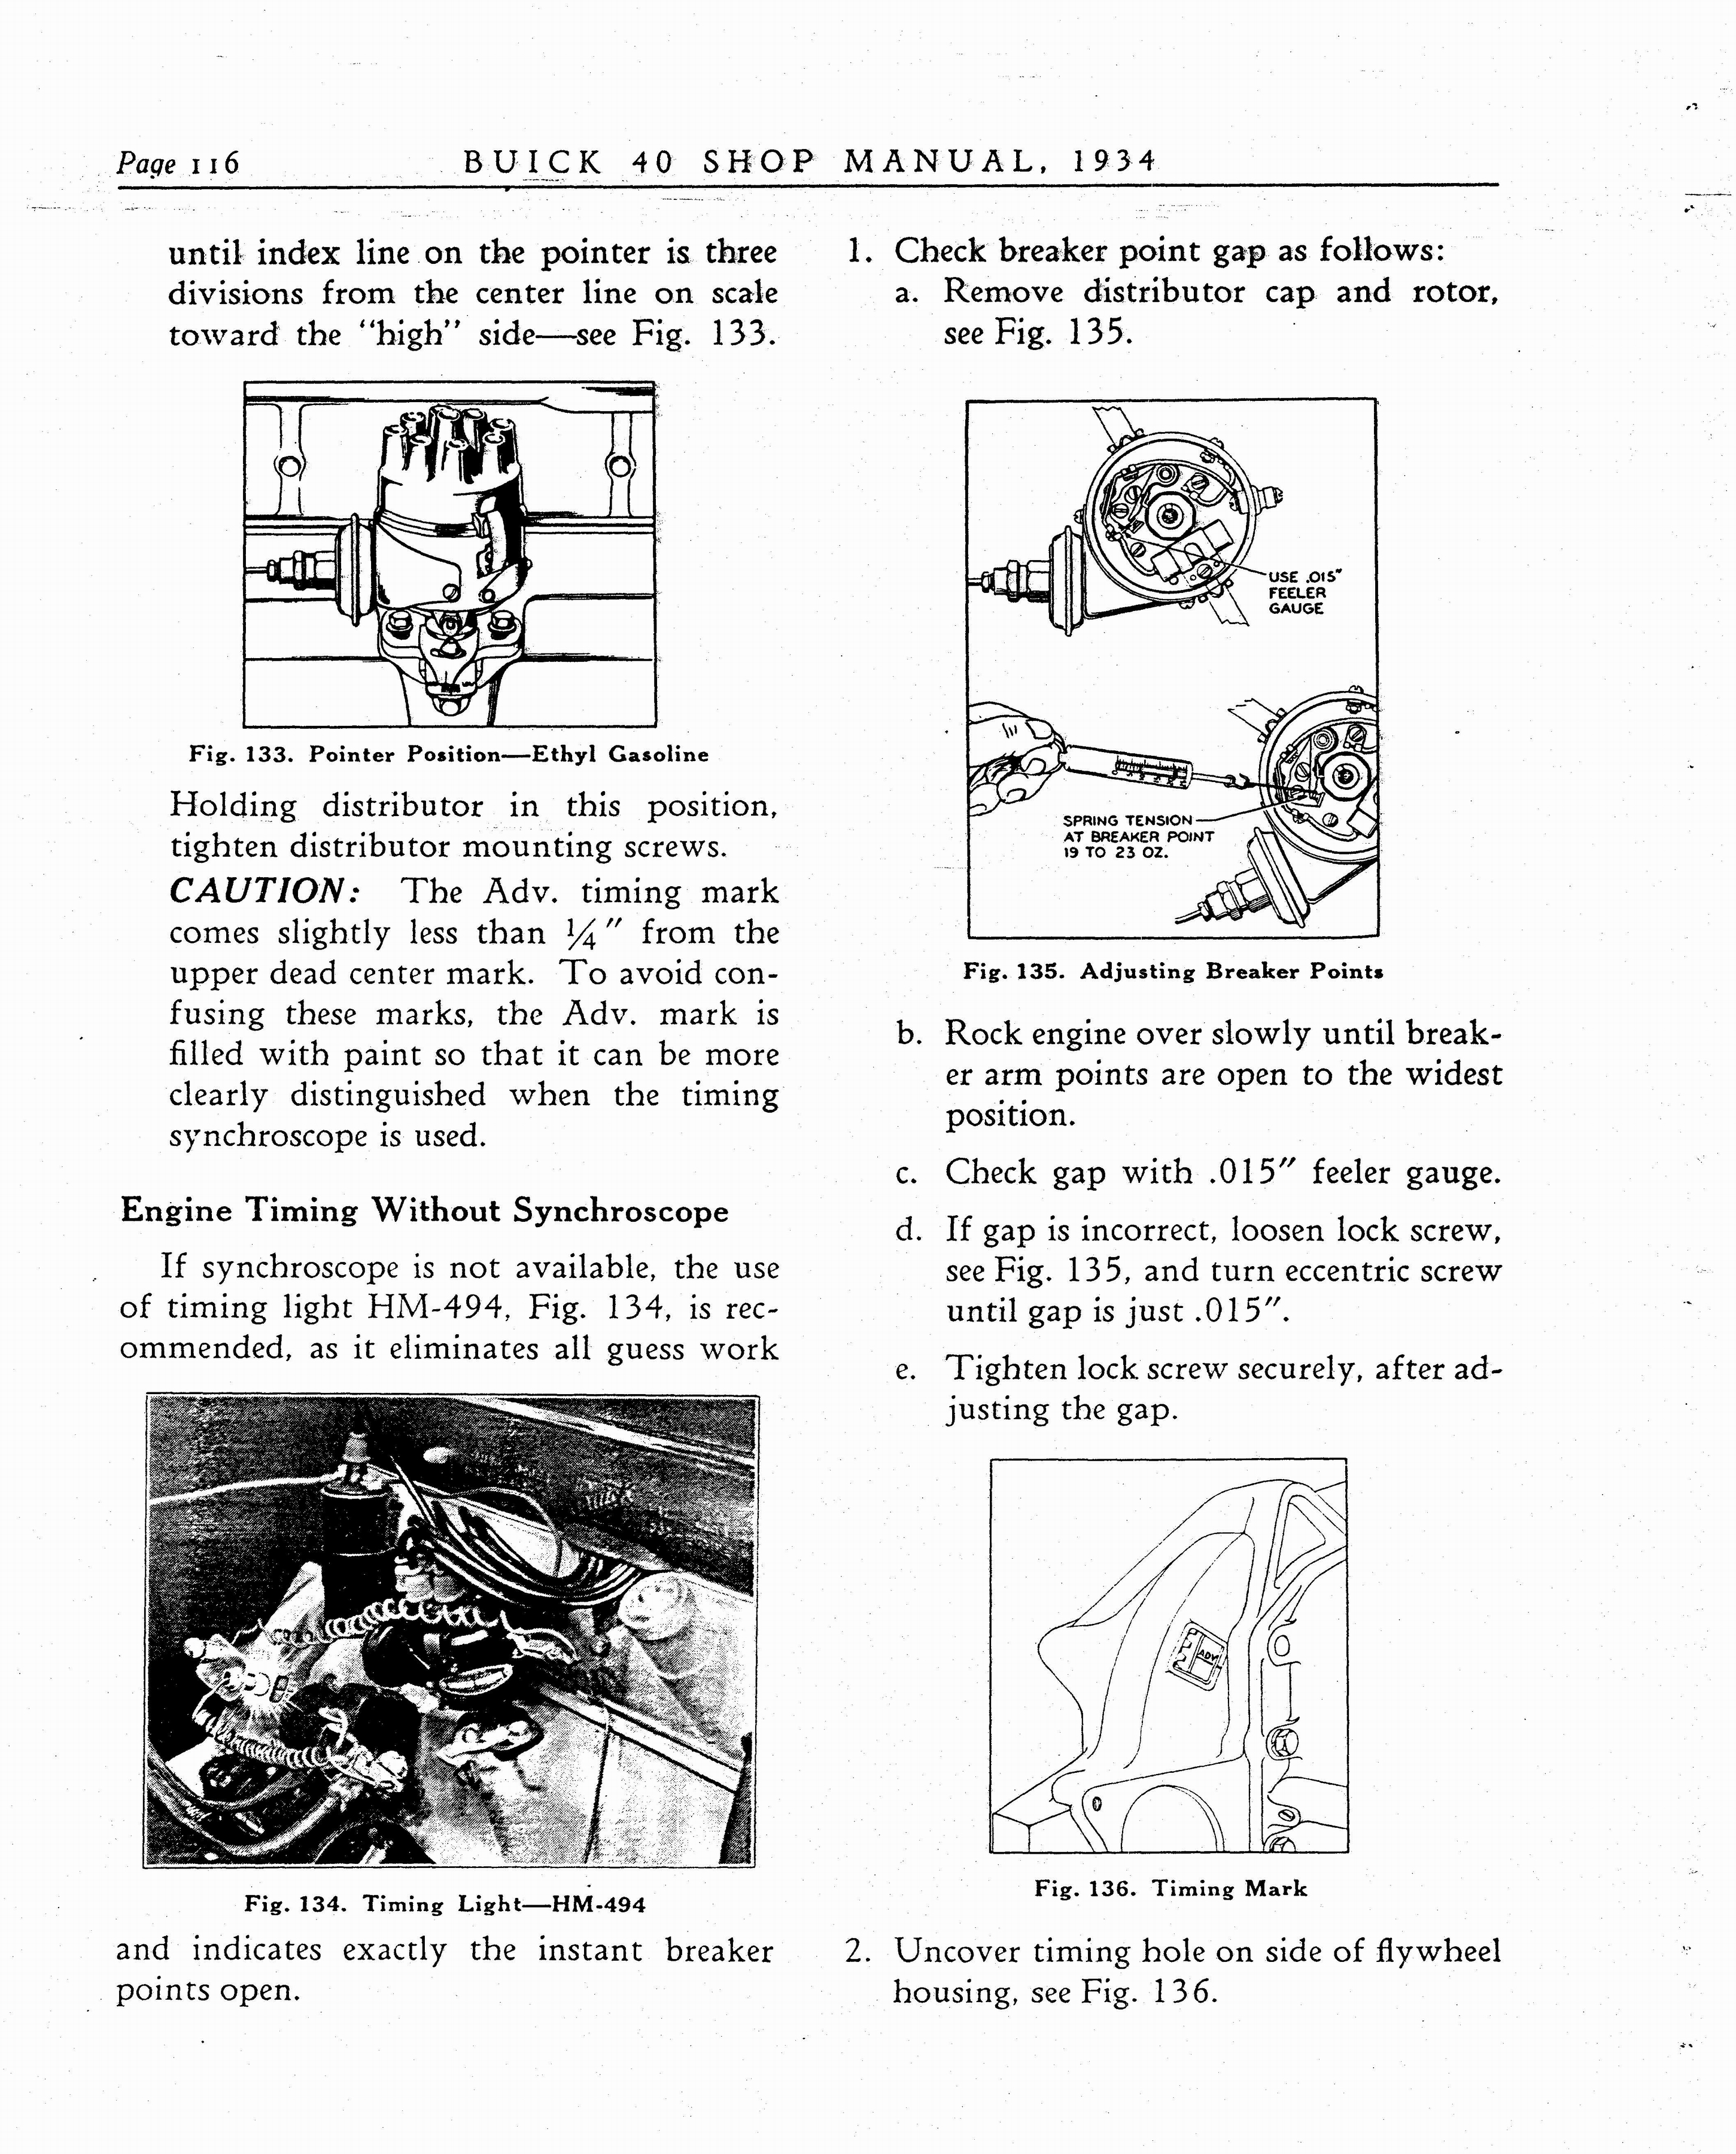 n_1934 Buick Series 40 Shop Manual_Page_117.jpg